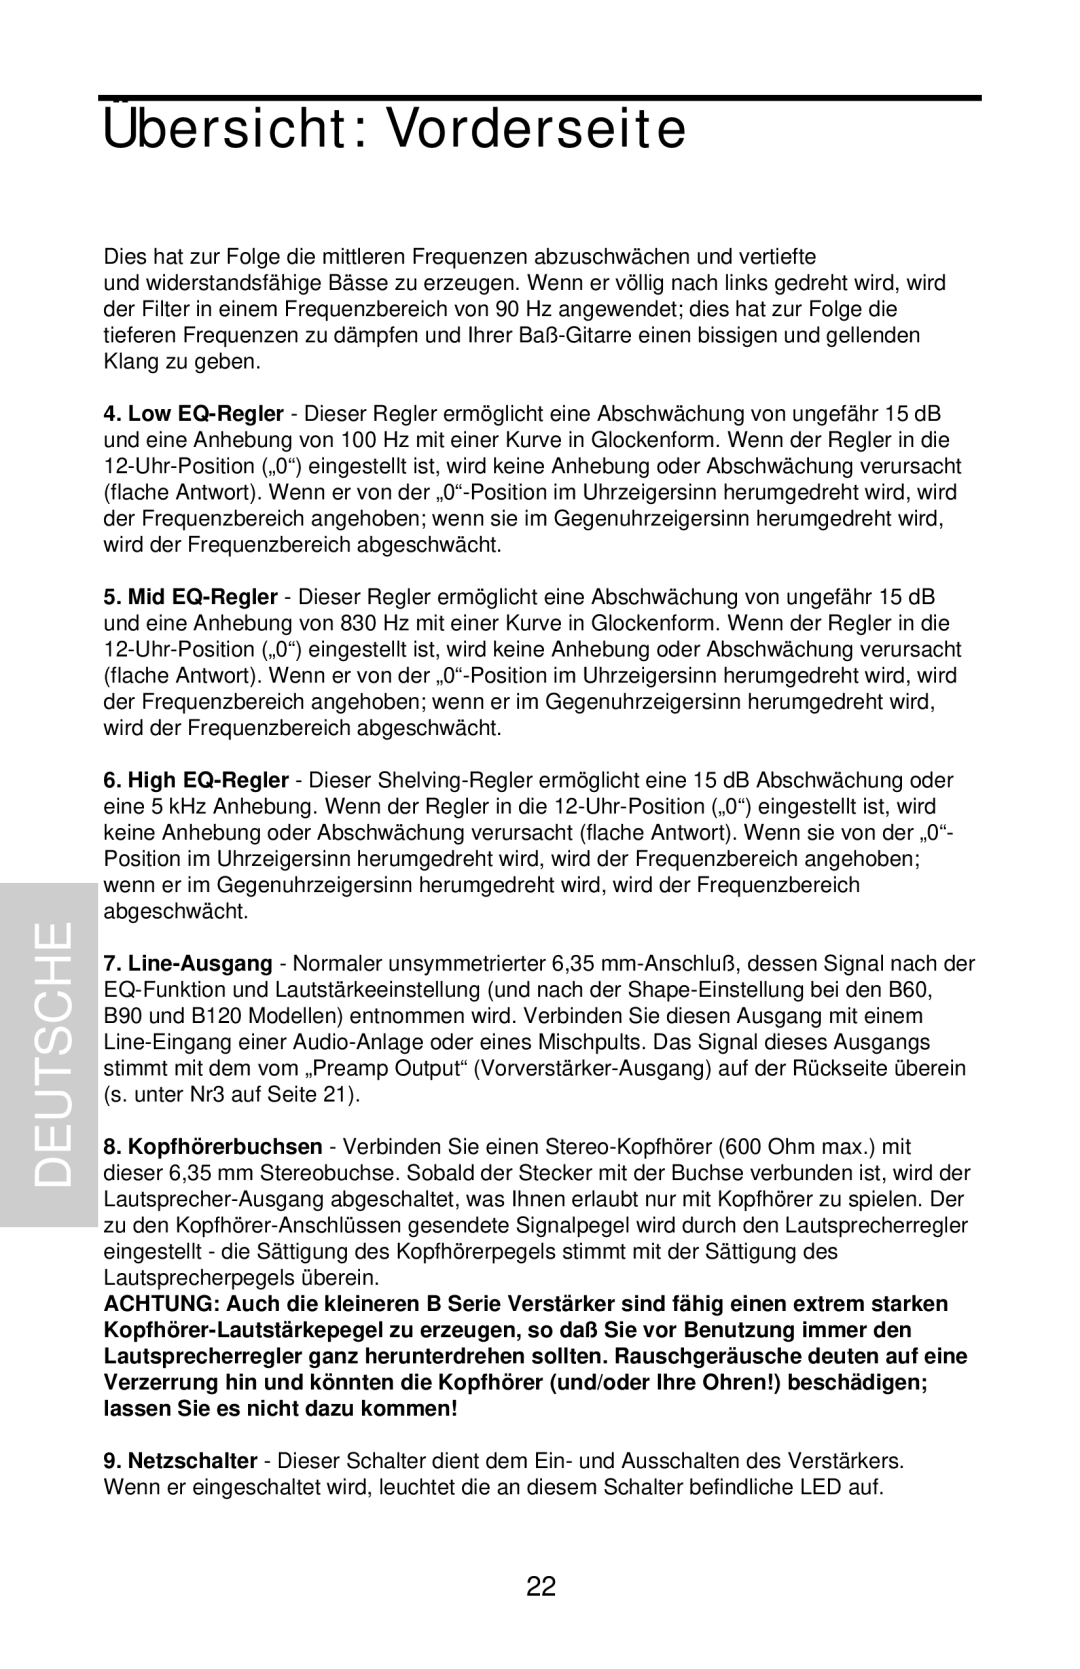 Samson B90 owner manual Übersicht Vorderseite, Deutsche 